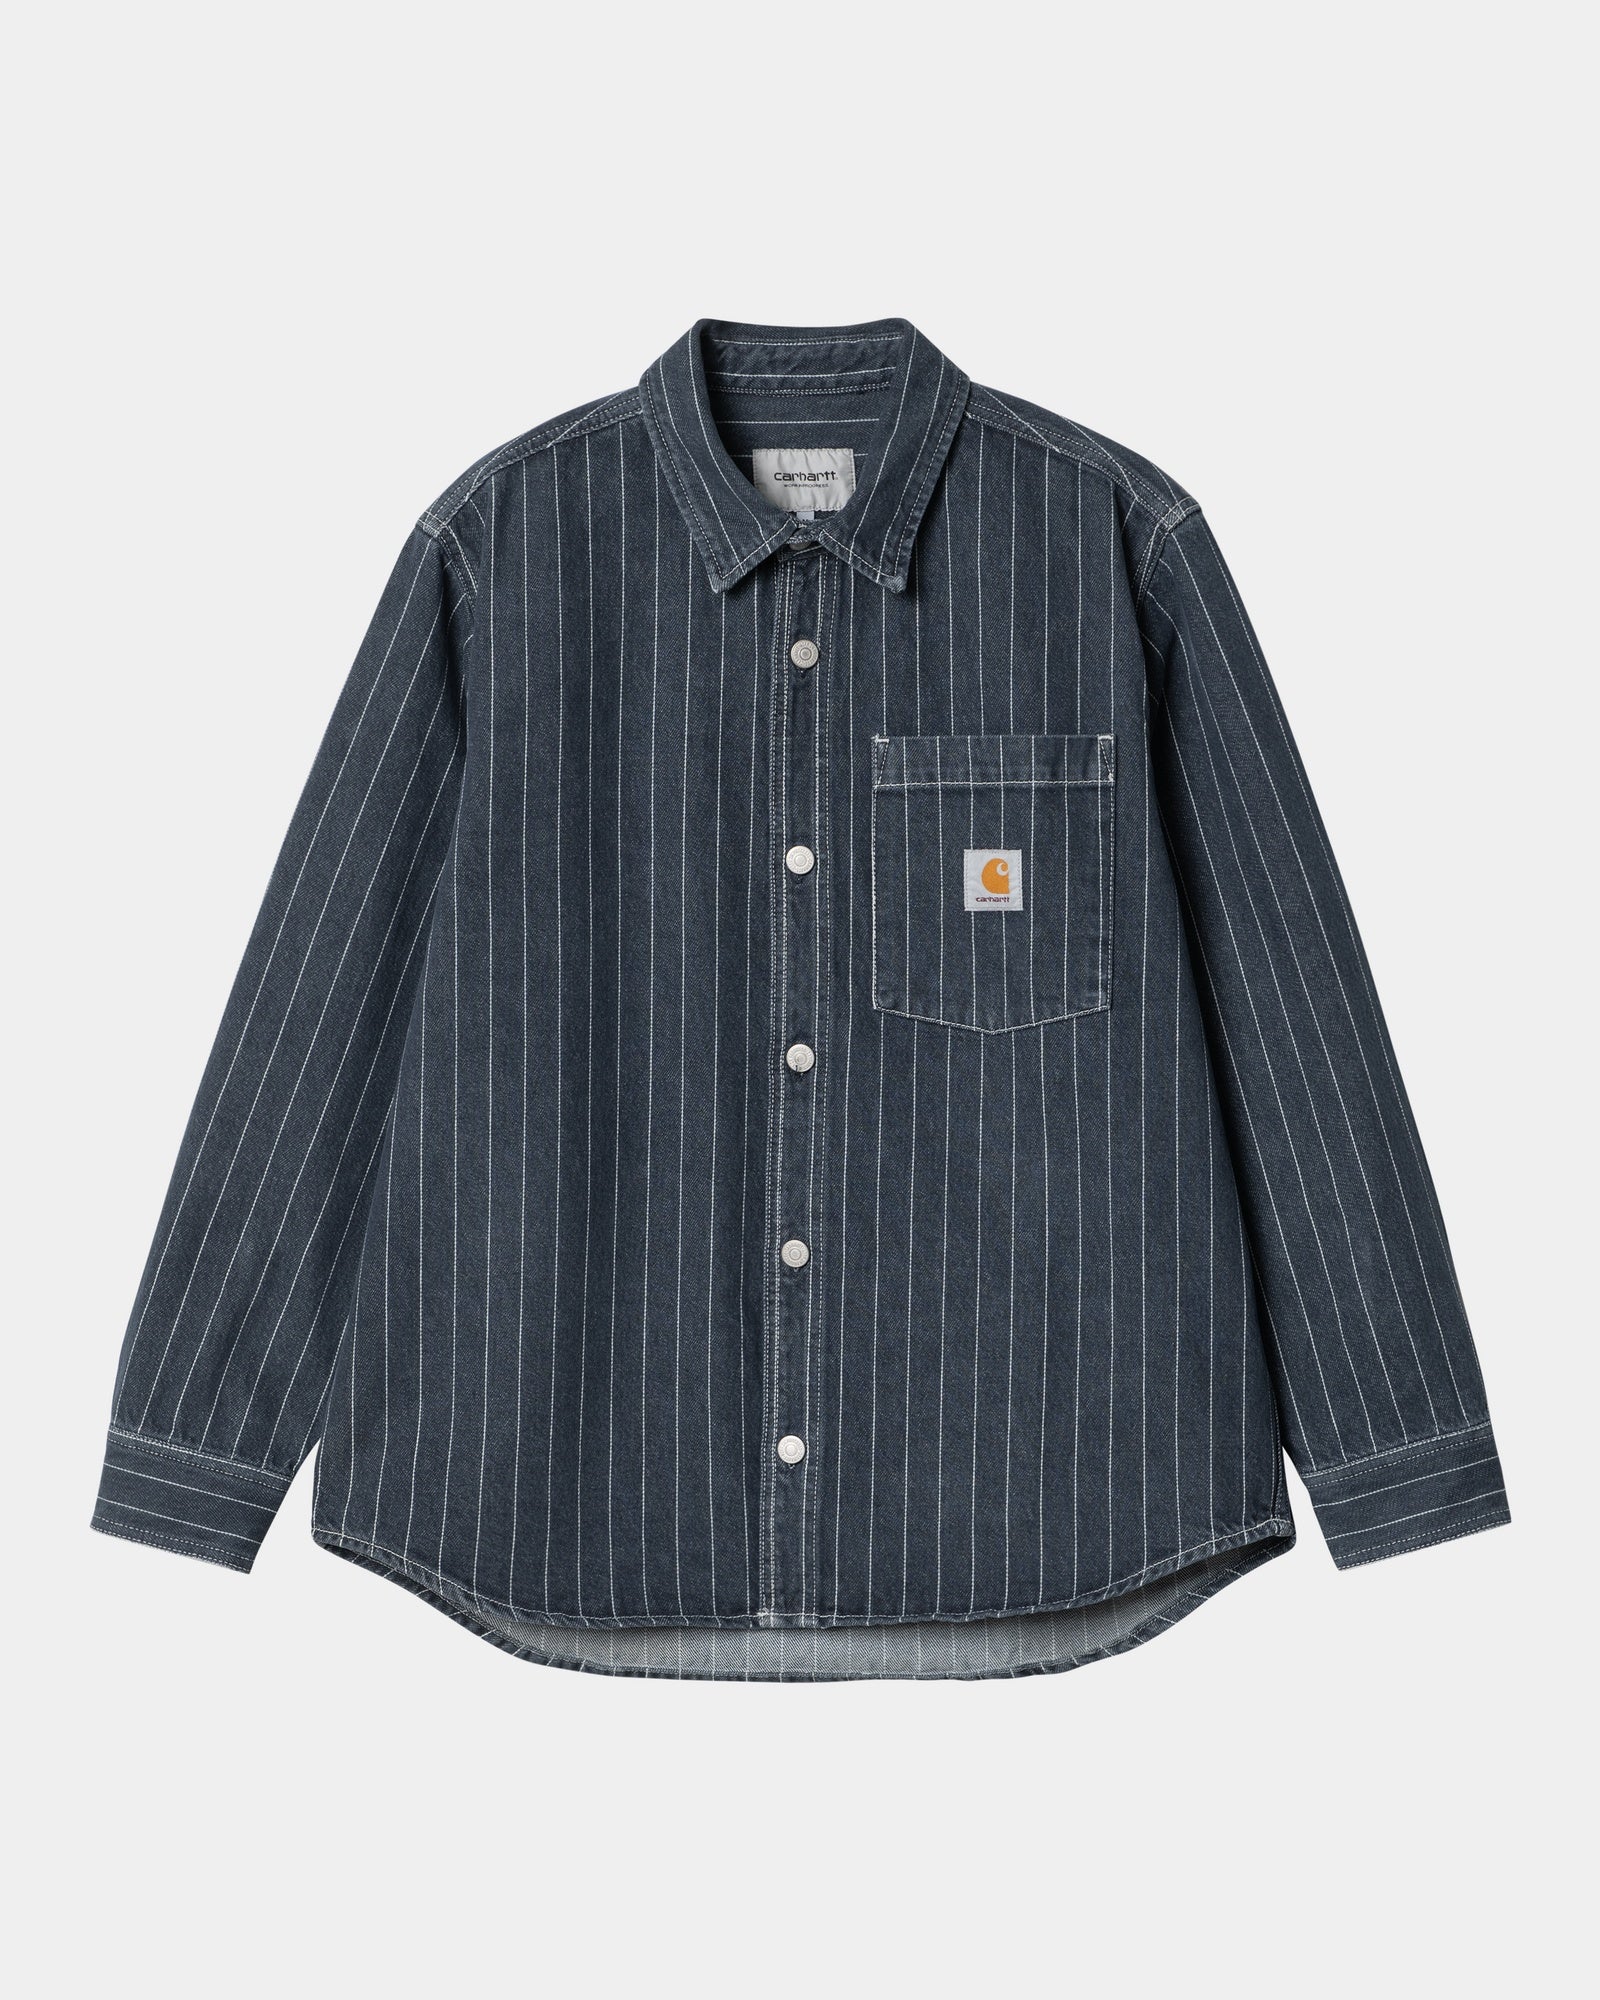 칼하트WIP Carhartt Orlean Stripe Shirt Jacket,Blue / White stone washed